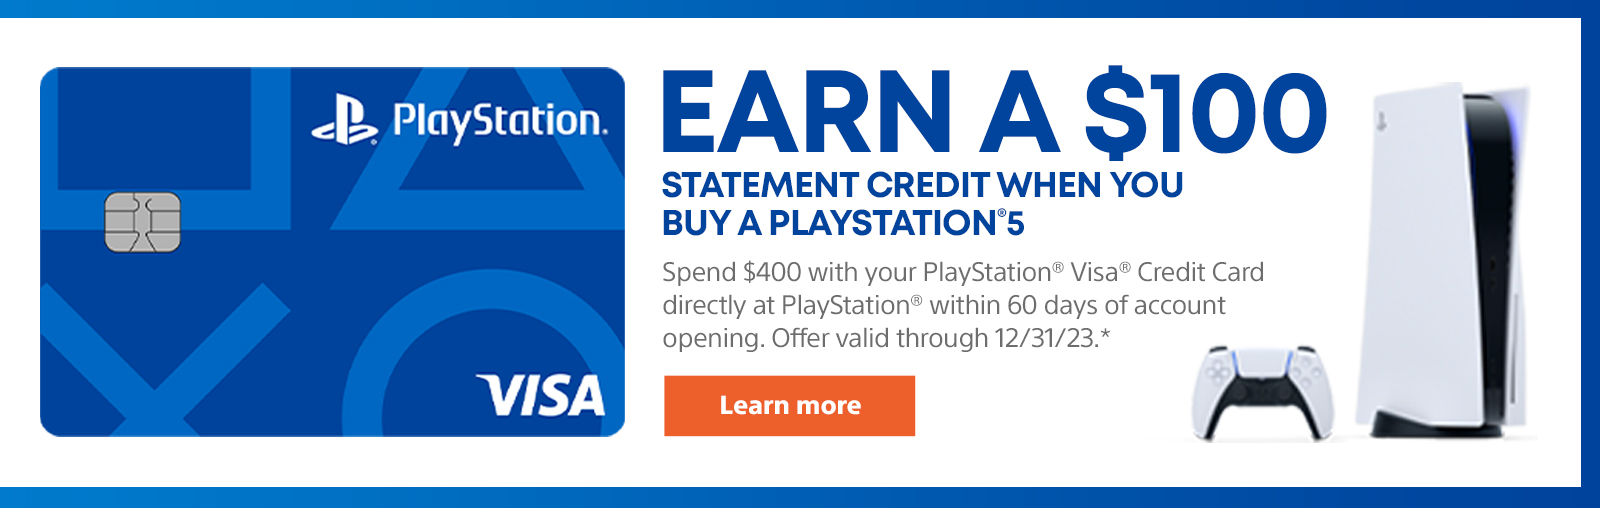 Bir PlayStation 5 satın aldığınızda 100 $ 'lık bir ifade kredisi kazanın 5. Hesap açılışından sonraki 60 gün içinde doğrudan PlayStation'da 400 $ harcamak için PlayStation Visa Kredi Kartı'nı kullanın. Teklif 12/31/23 arasında geçerlidir